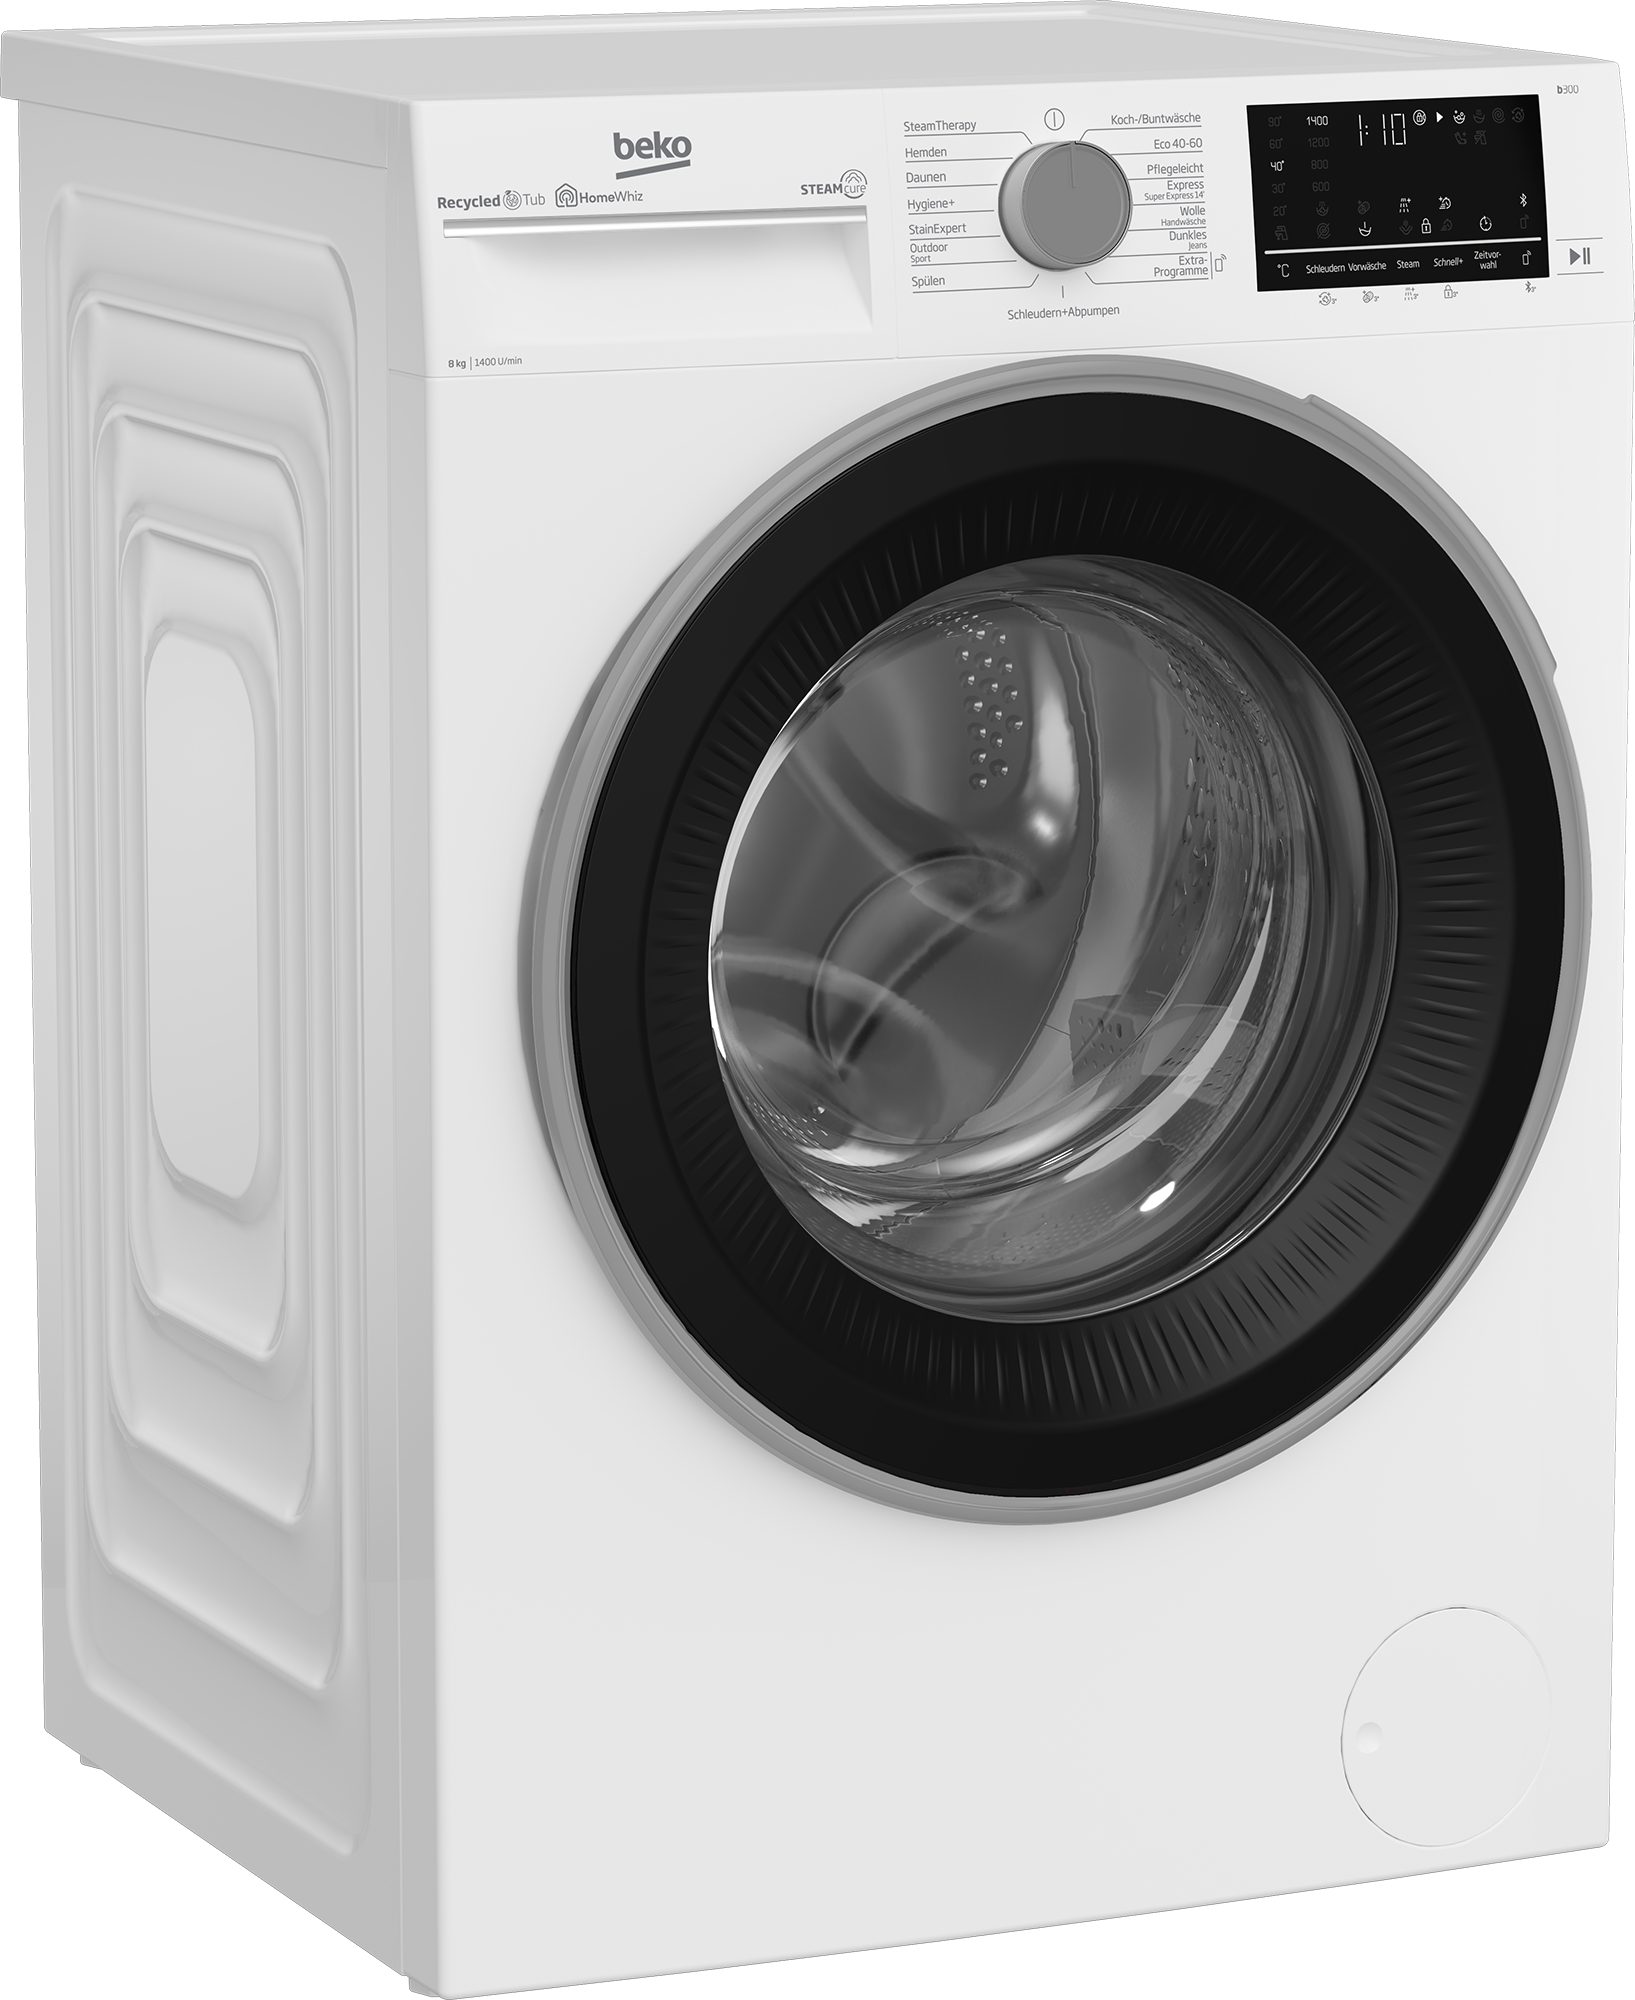 1400 Waschmaschine BEKO U/min, 99% allergenfrei kg, - b300 SteamCure B3WFU58415W1, 8